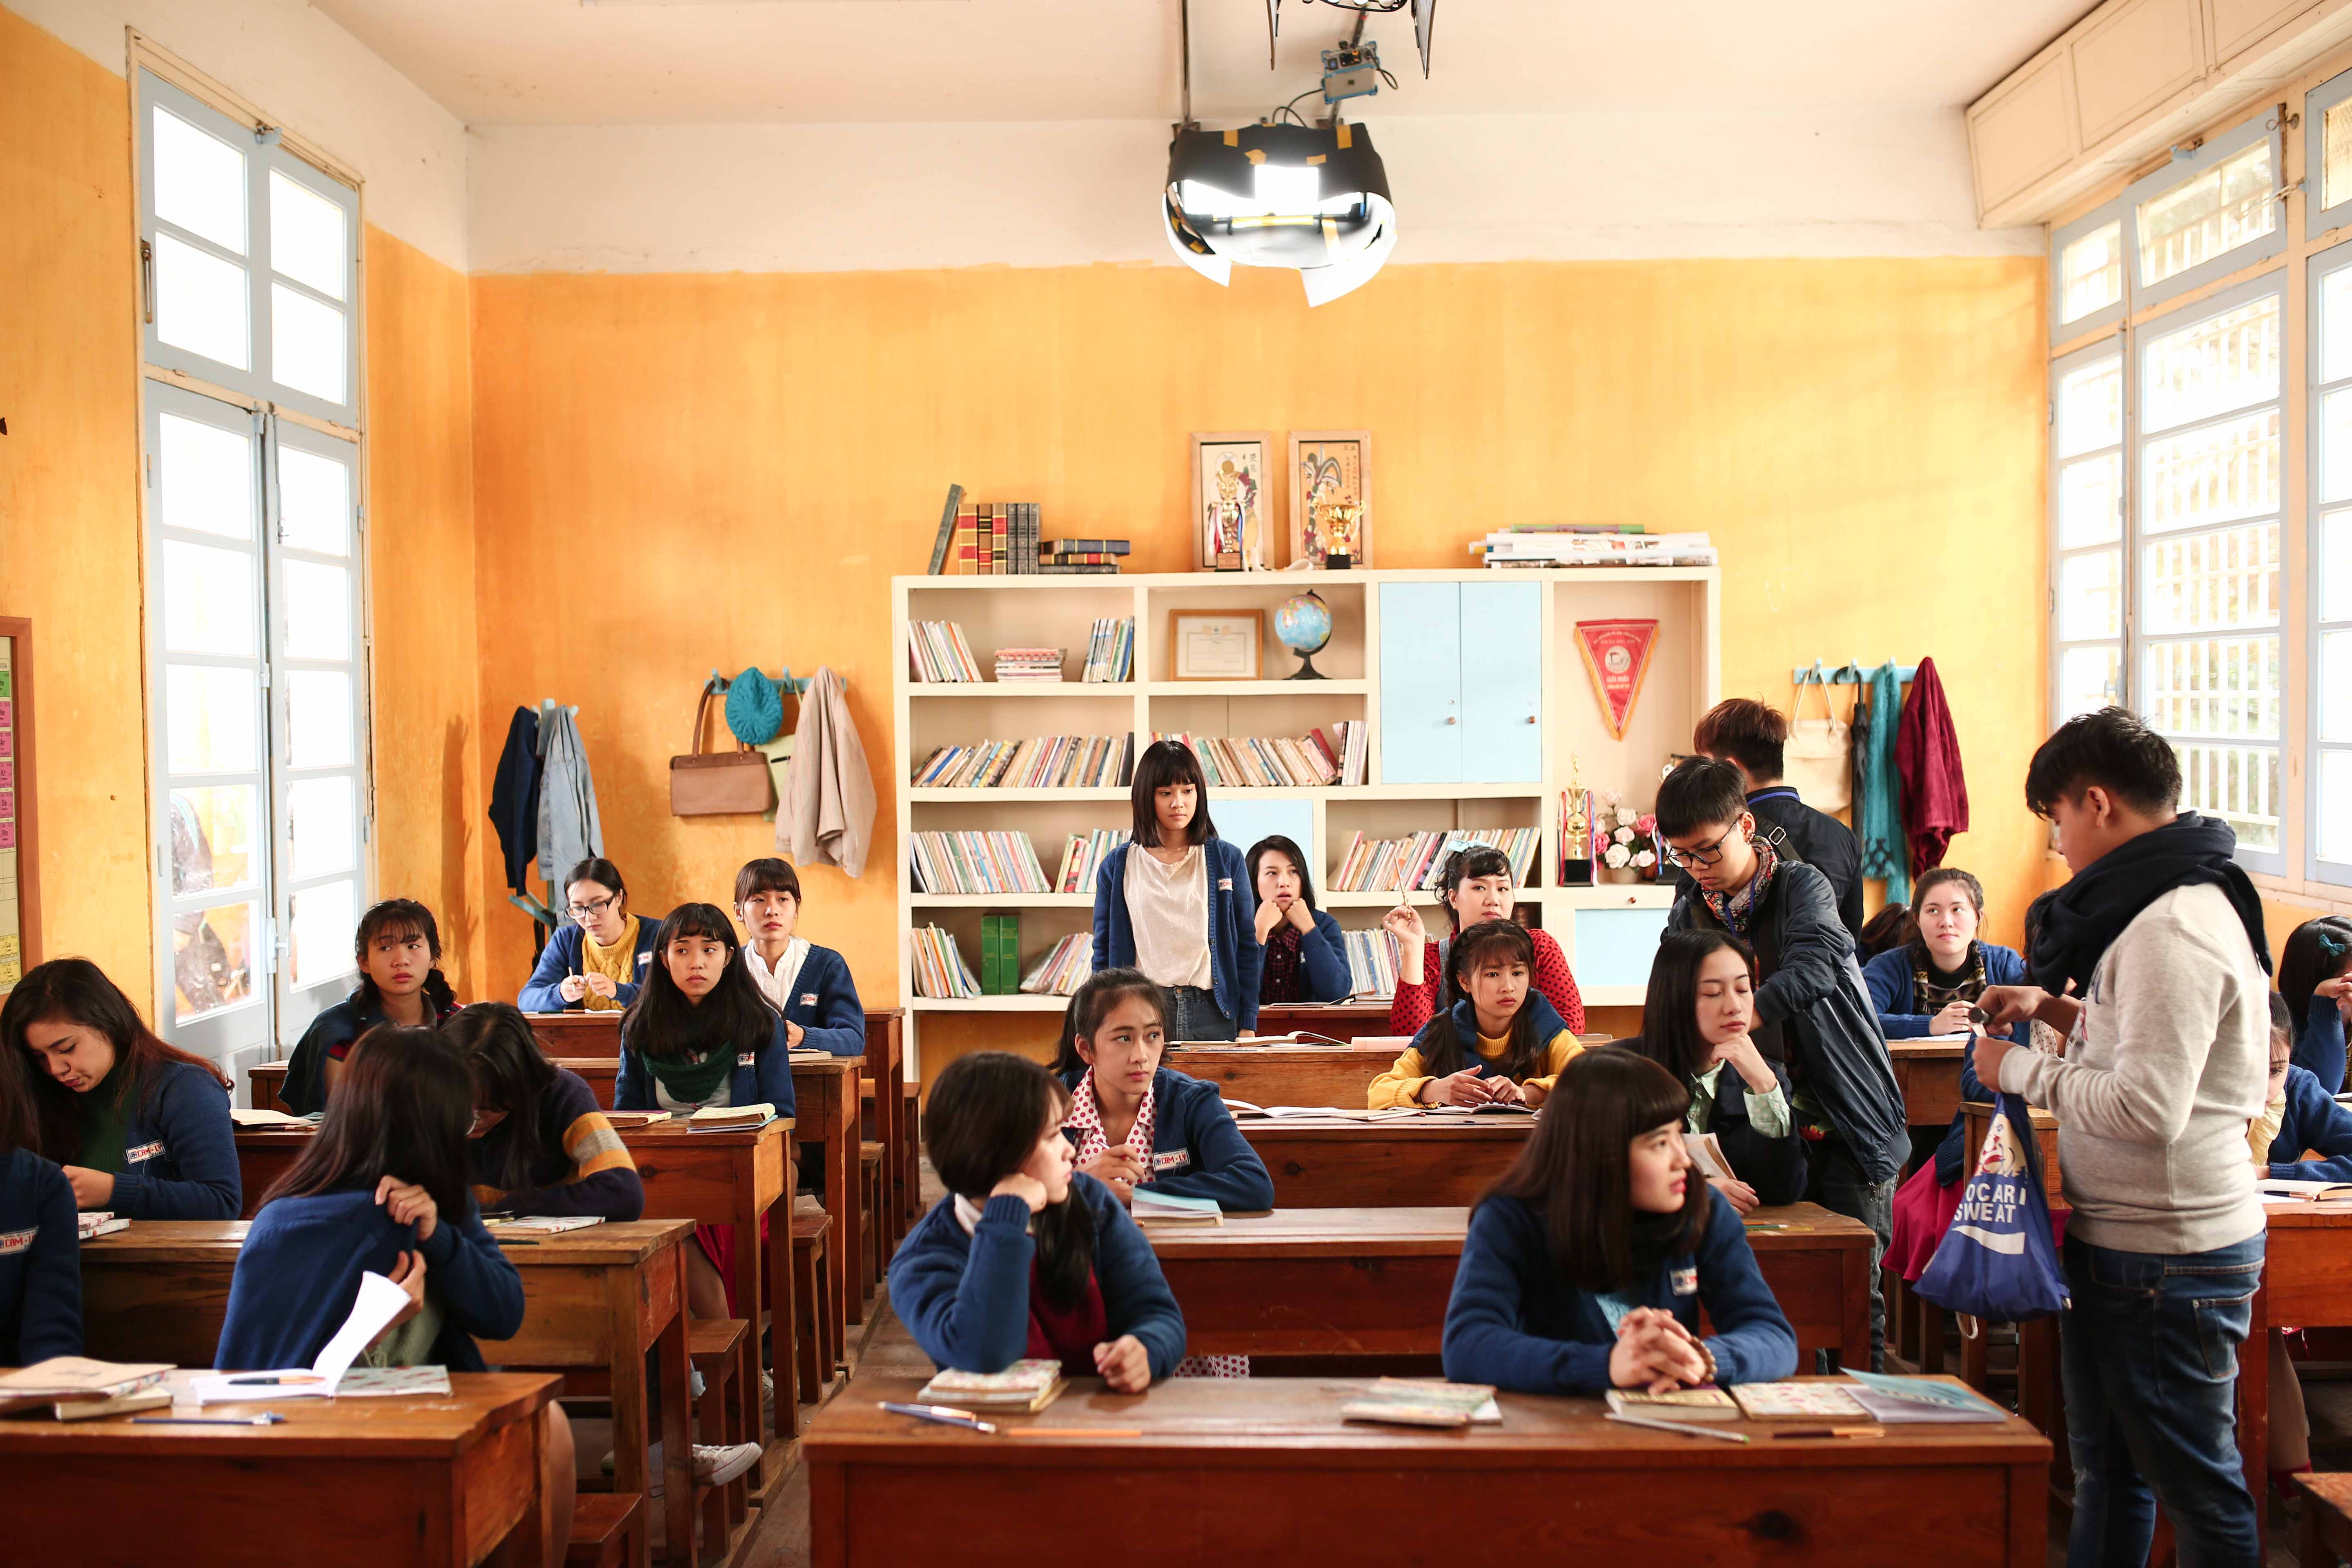 Hồi tưởng lại thời trung học qua phim diện ảnh mới của đạo diễn Nguyễn Quang Dũng